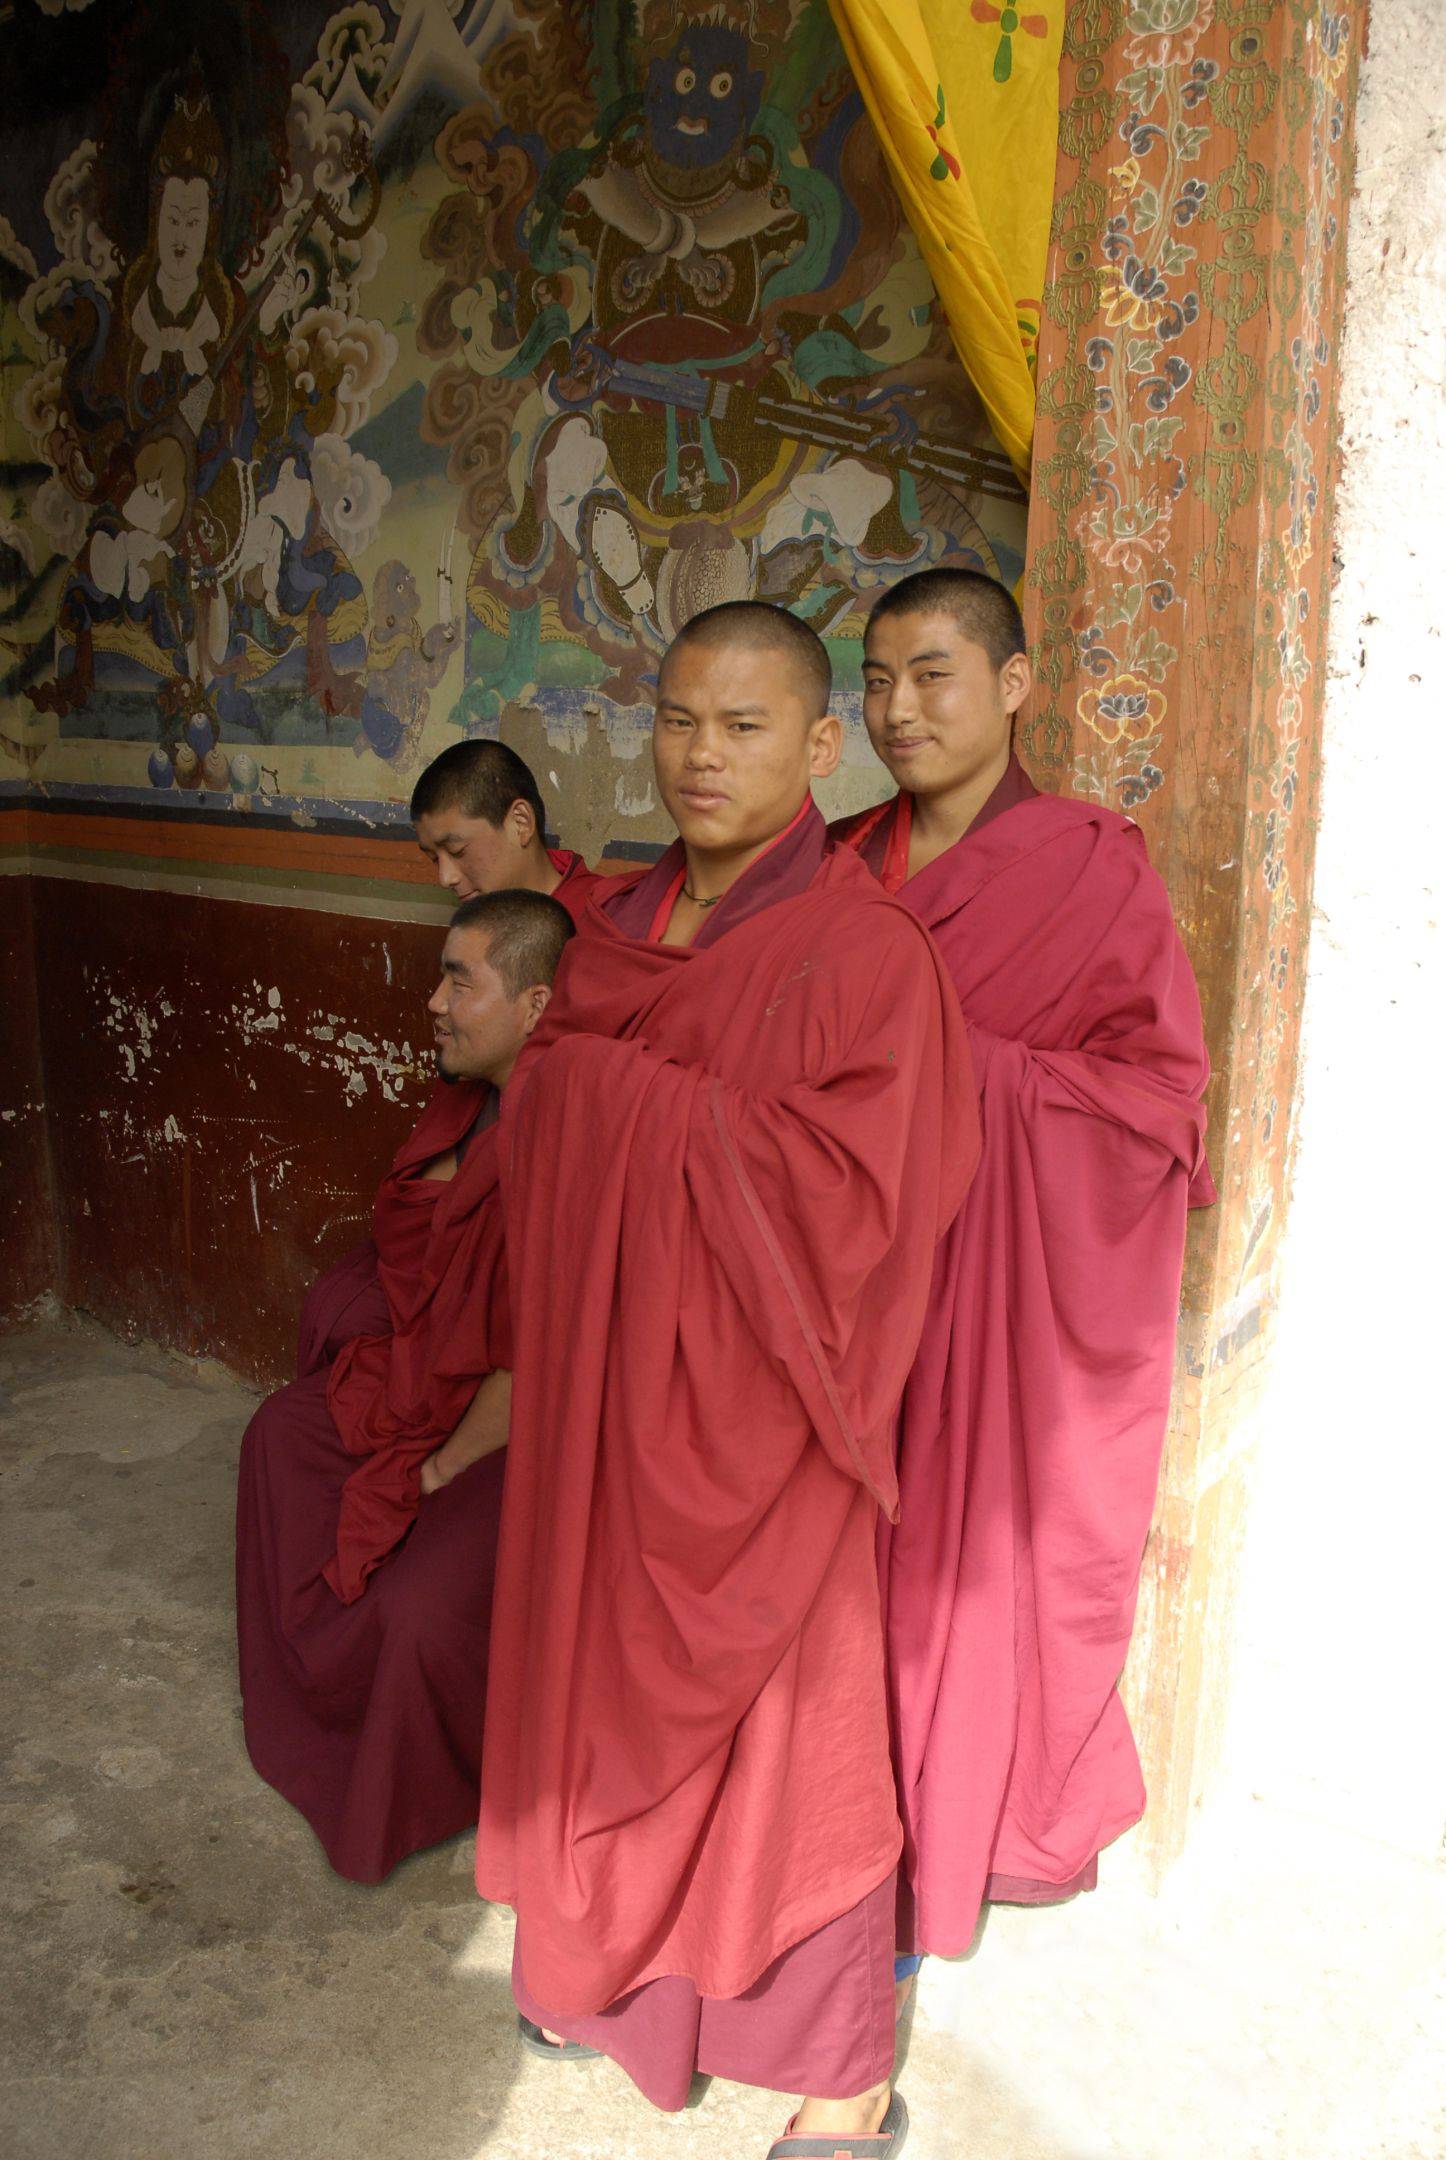 19 octobre : Arrivée à Thimphou